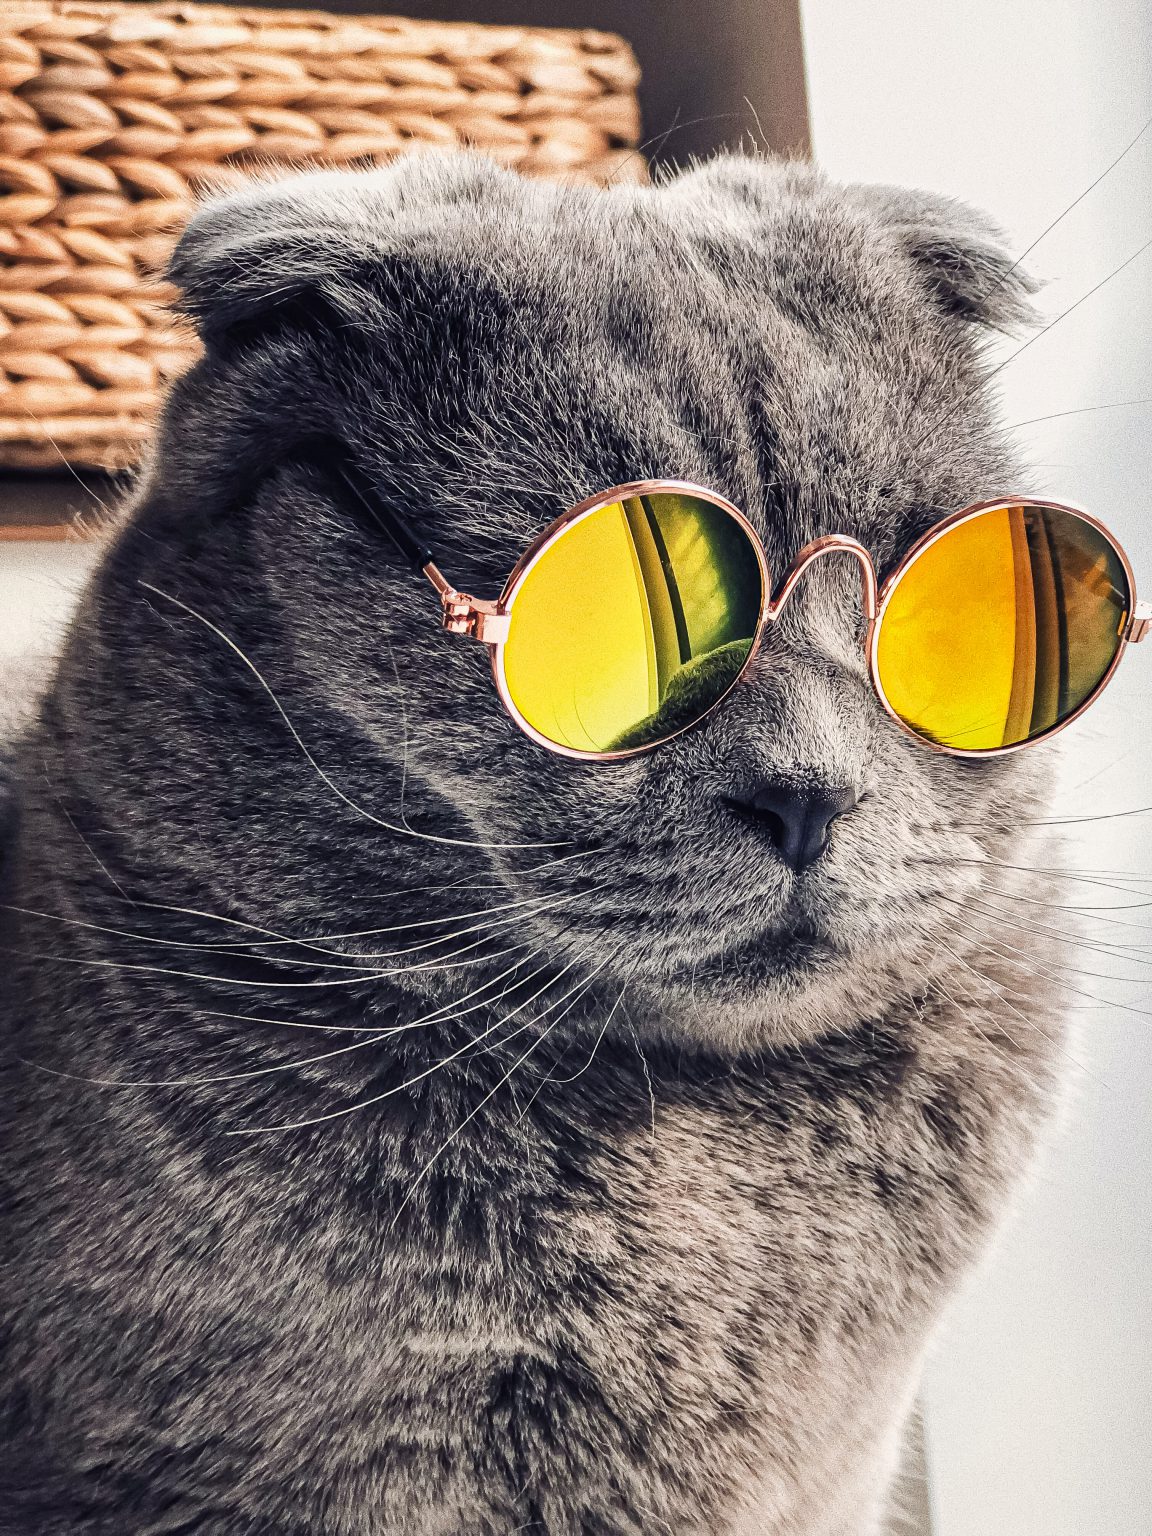 Kucing Pakai Kacamata Bulat